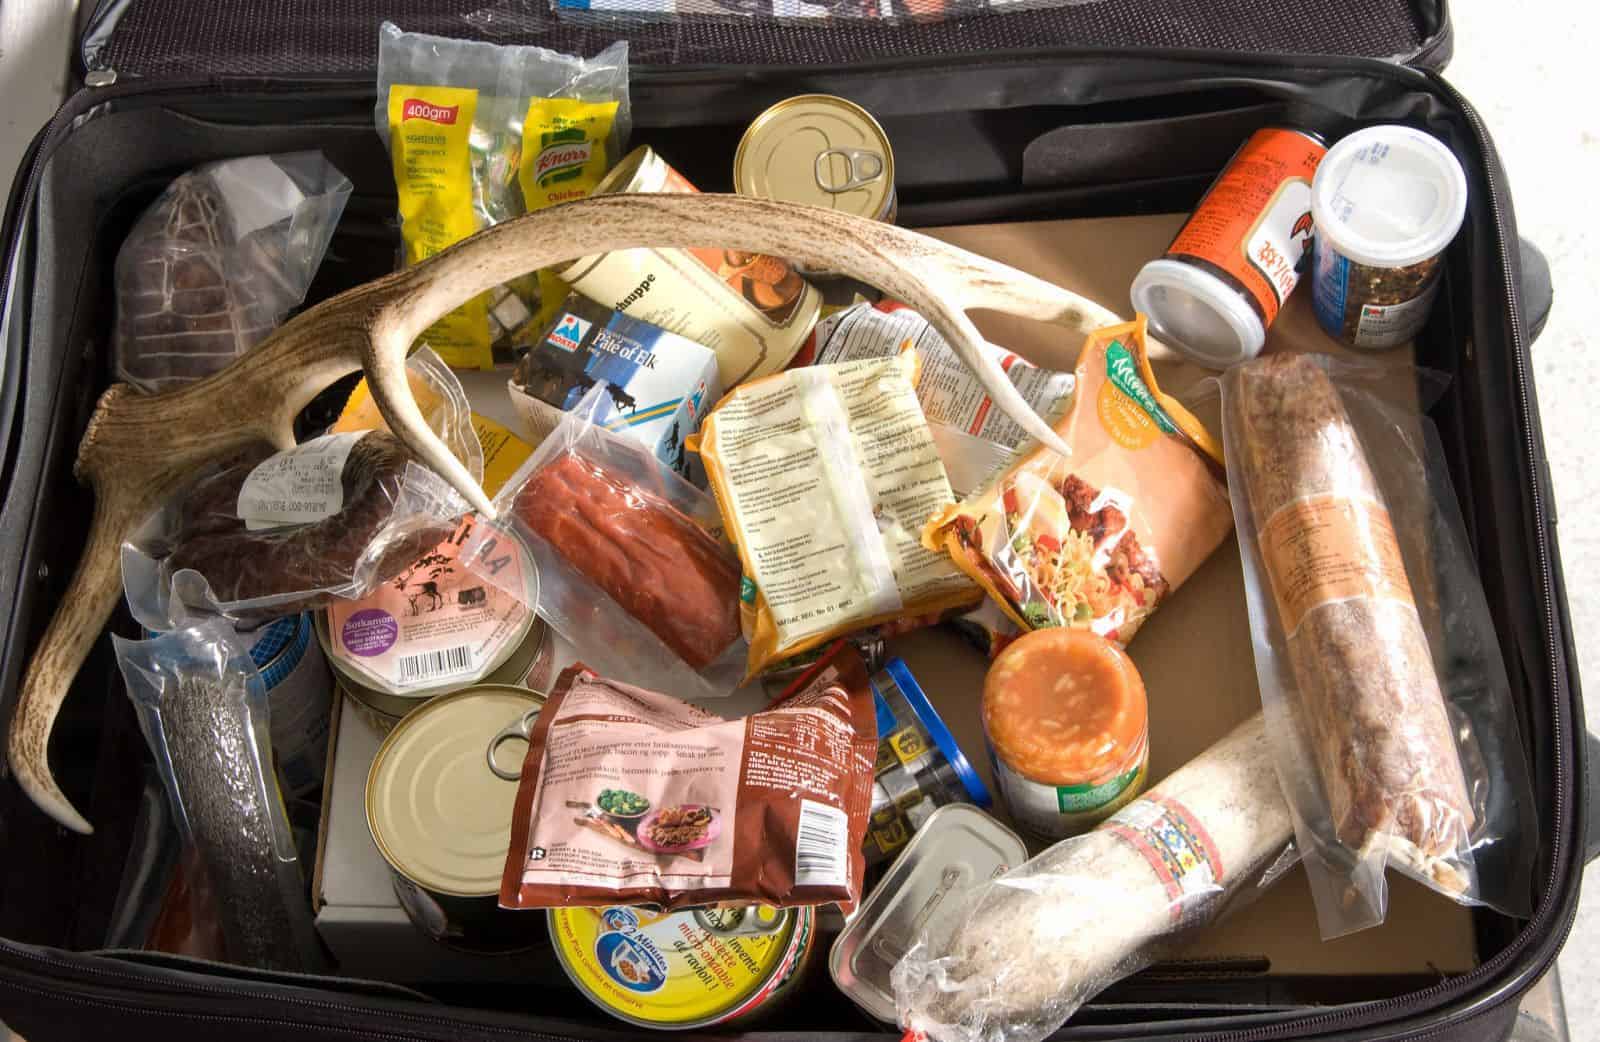 Nhiều người thường thắc mắc liệu có được phép mang đồ ăn lên máy bay hay không? Câu trả lời là CÓ, hầu hết trên các chuyến bay nội địa.